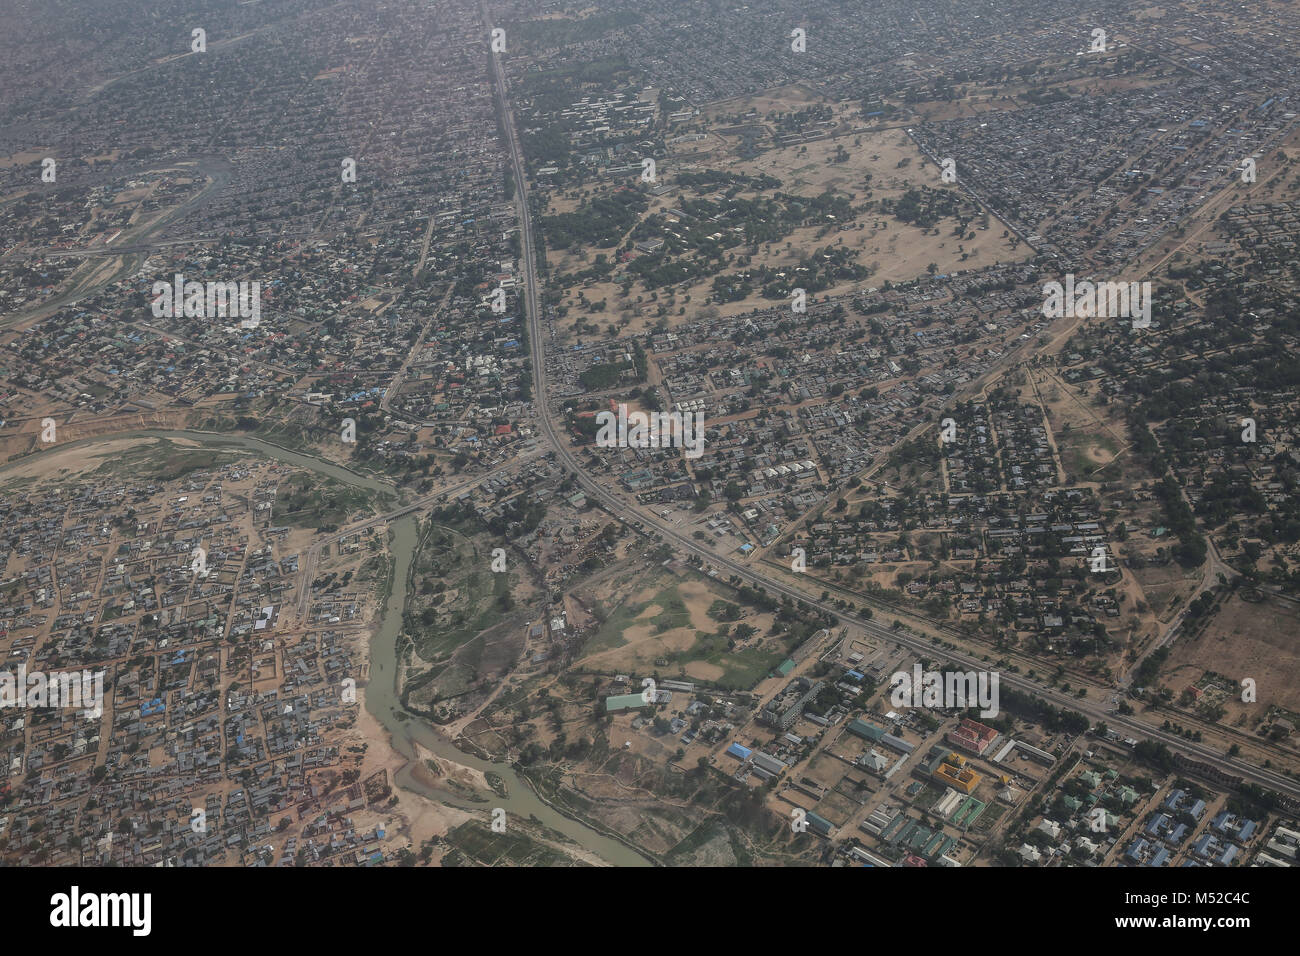 Ein Luftbild von Maiduguri, der Stadt, Boko Haram geboren. Stockfoto